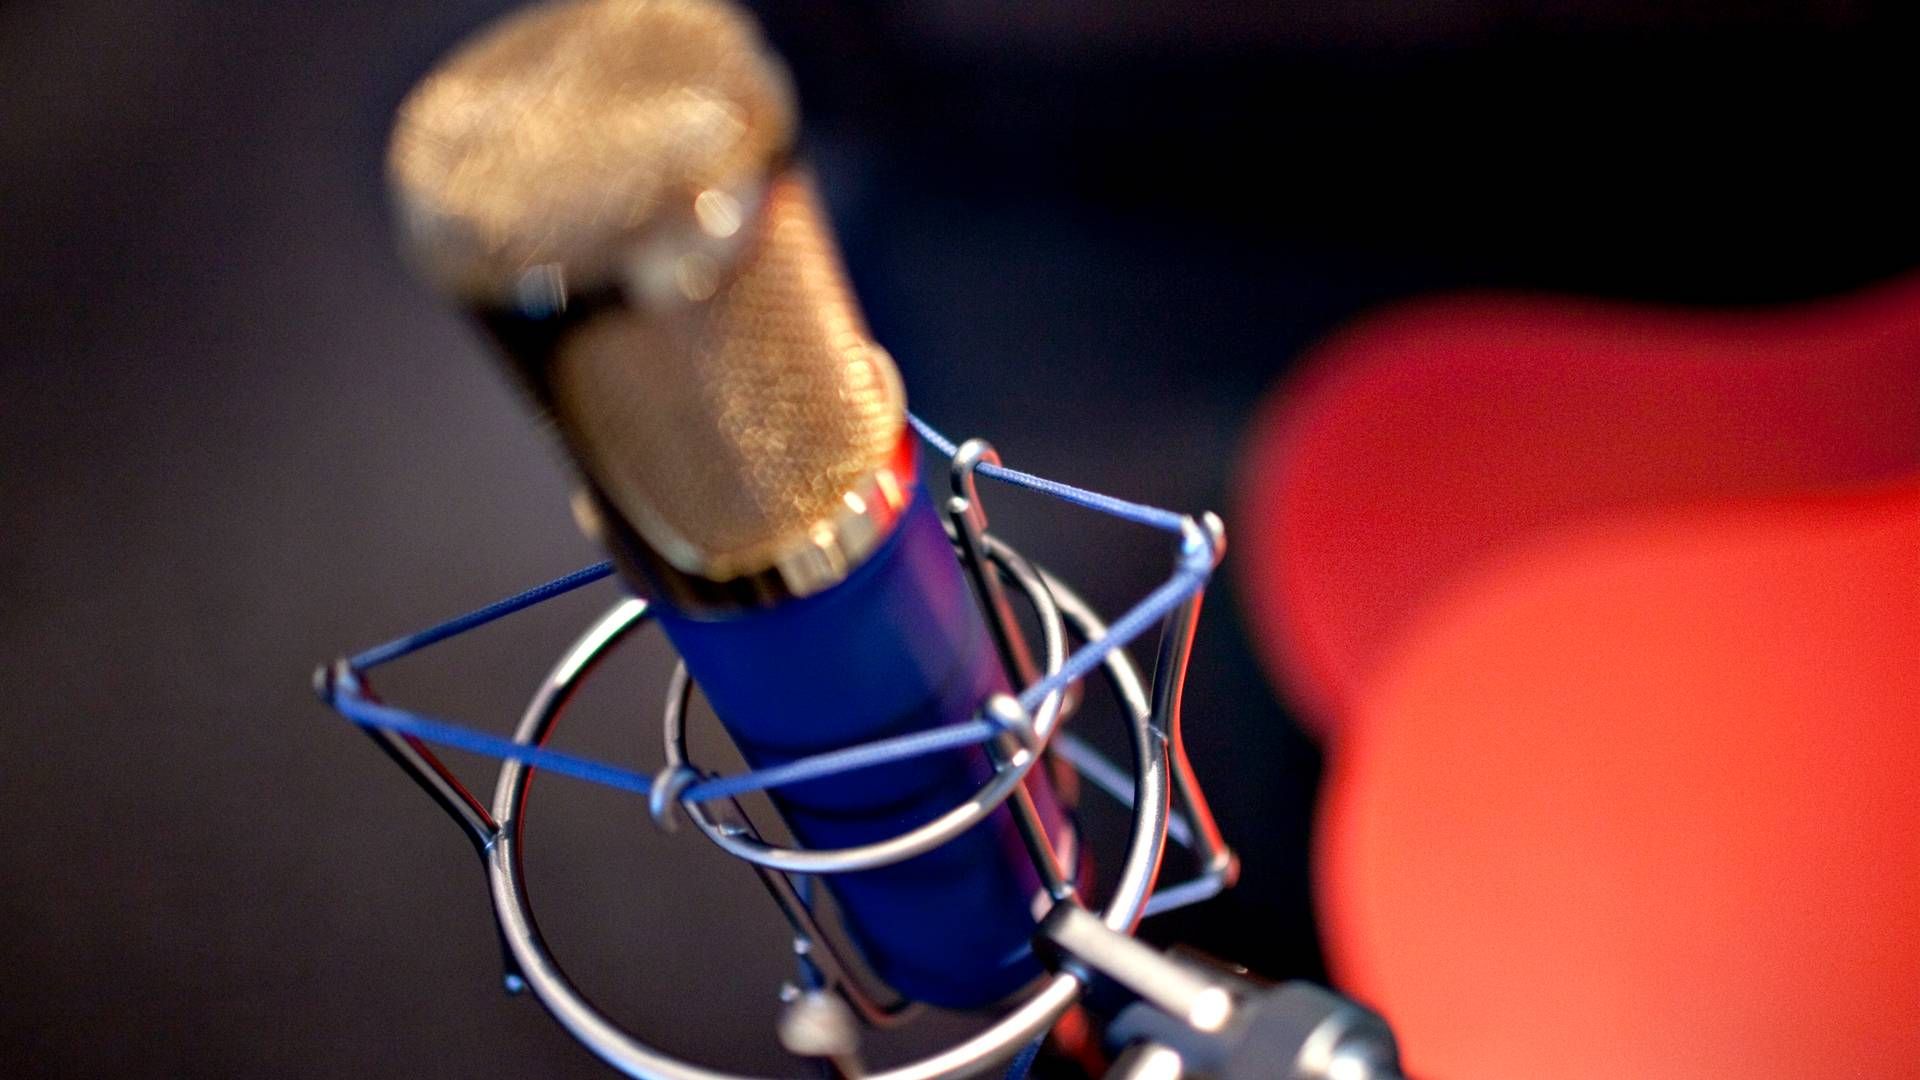 Podcastformater bliver ikke anerkendt nok, mener Third Ear Studios svenske ledelse efter mediestøtte-afslag. | Foto: Miriam Dalsgaard